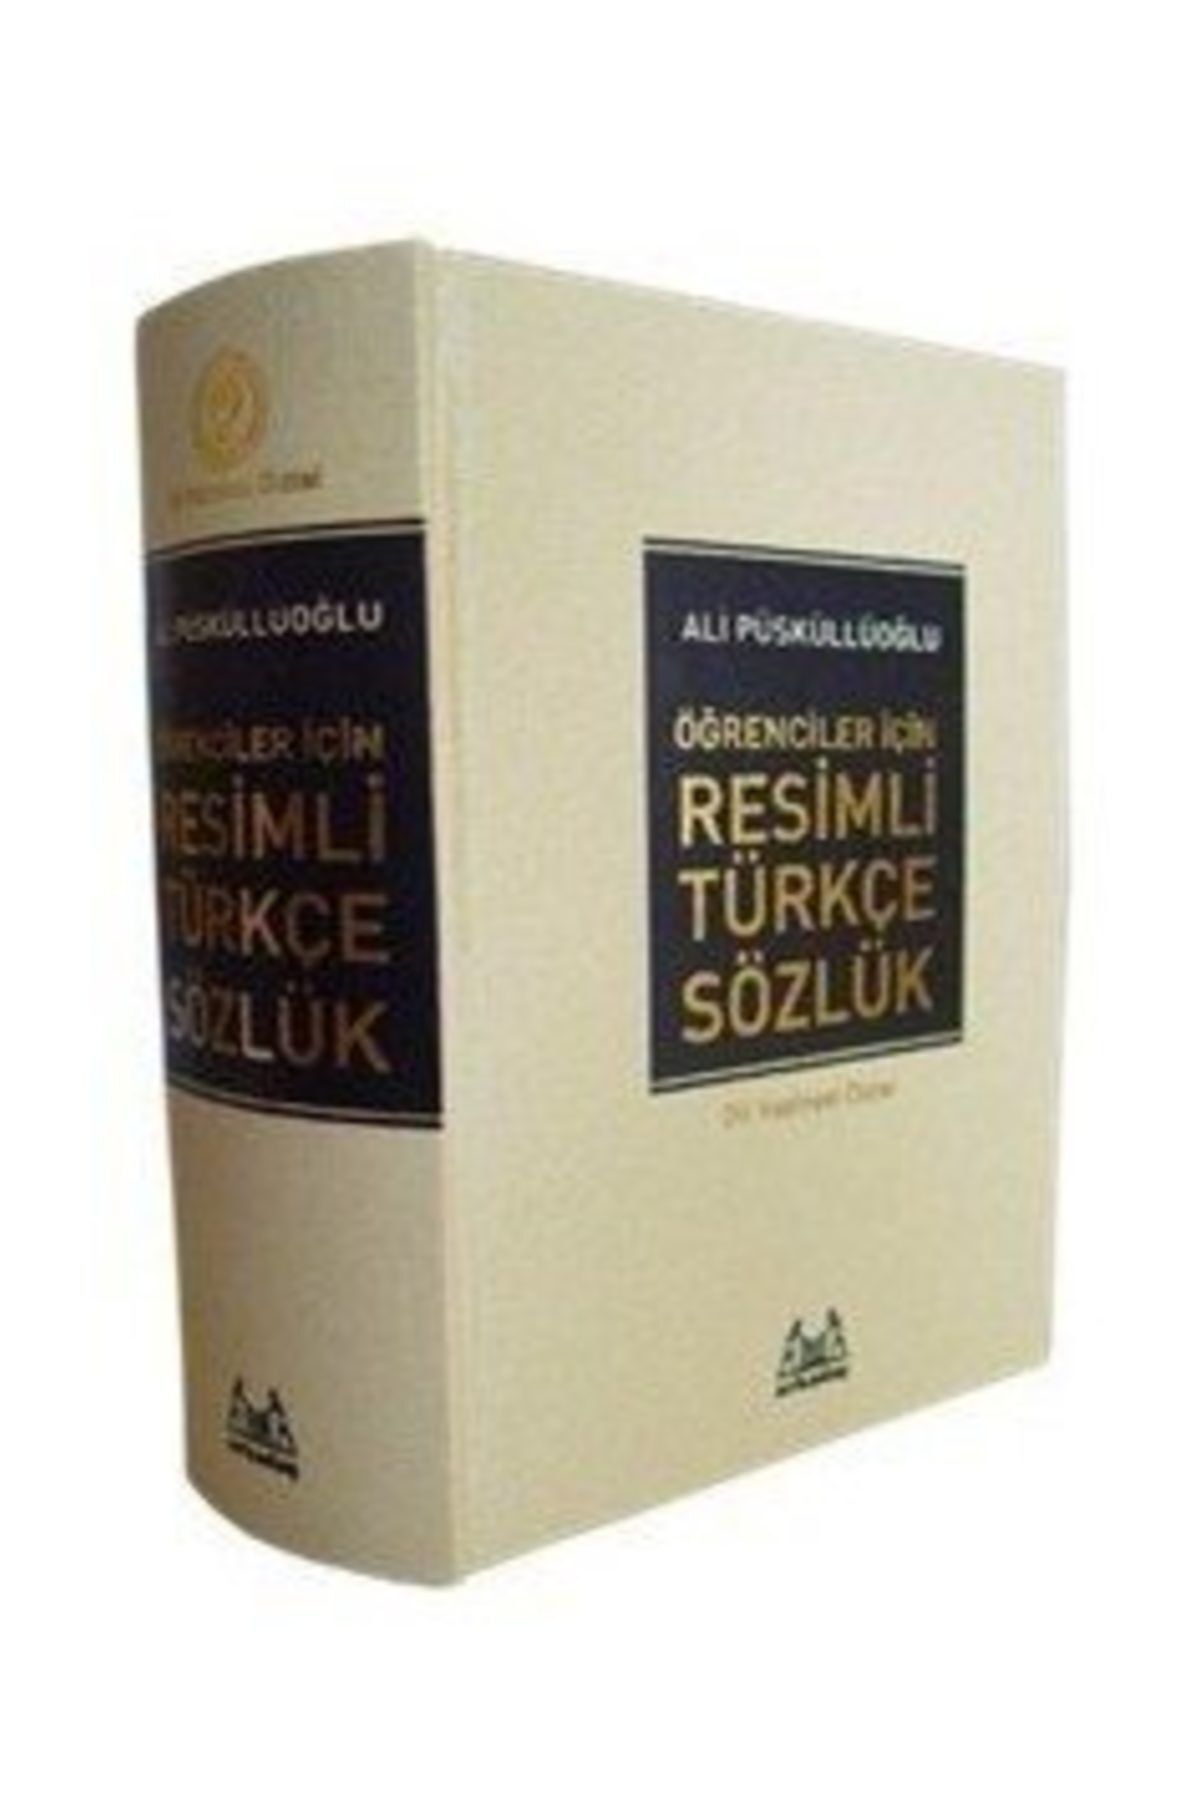 Arkadaş Yayıncılık Öğrenciler İçin Resimli Türkçe Sözlük - Ali Püsküllüoğlu 9789755097237